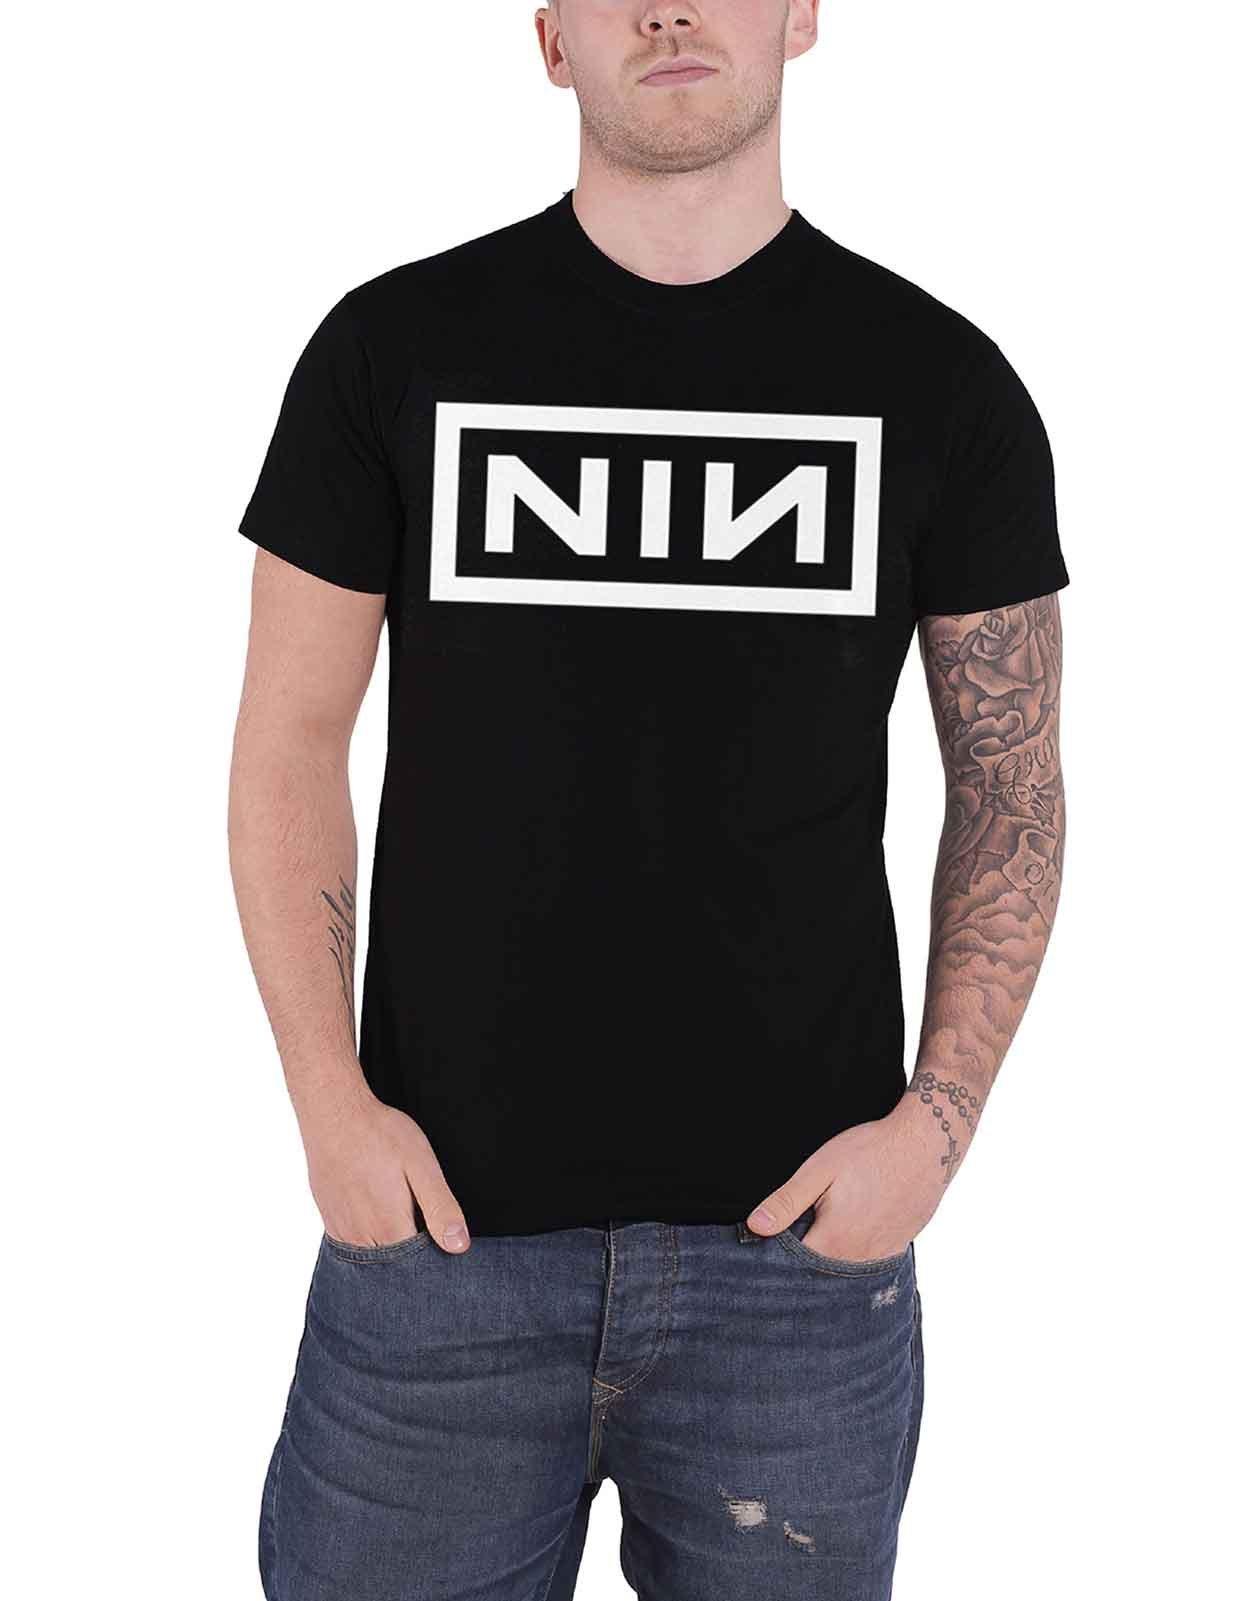 Футболка с логотипом группы Nine Inch Nails, черный футболка pretty hate machine nine inch nails черный